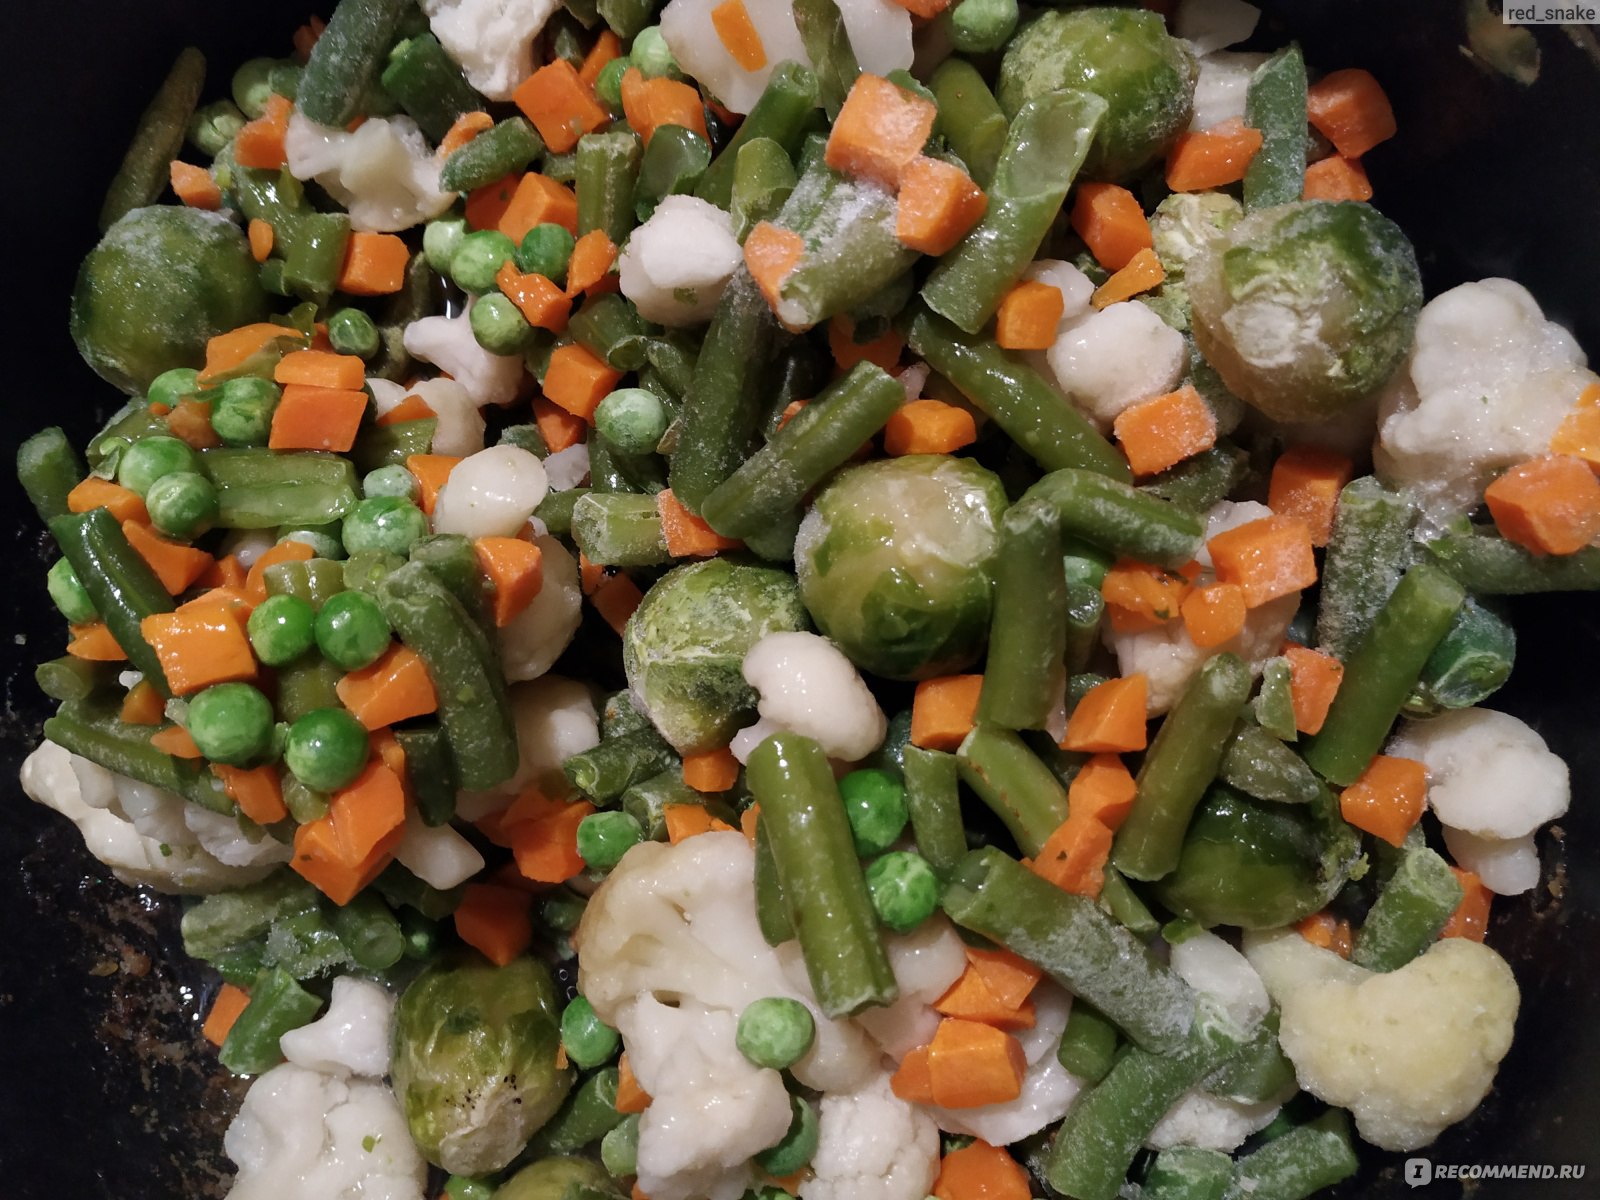 Замороженная смесь овощей как приготовить на сковороде. Смесь из овощей замороженная. Овощная смесь приготовленная. Что приготовить с замороженными овощами. Овощная смесь на сковороде.